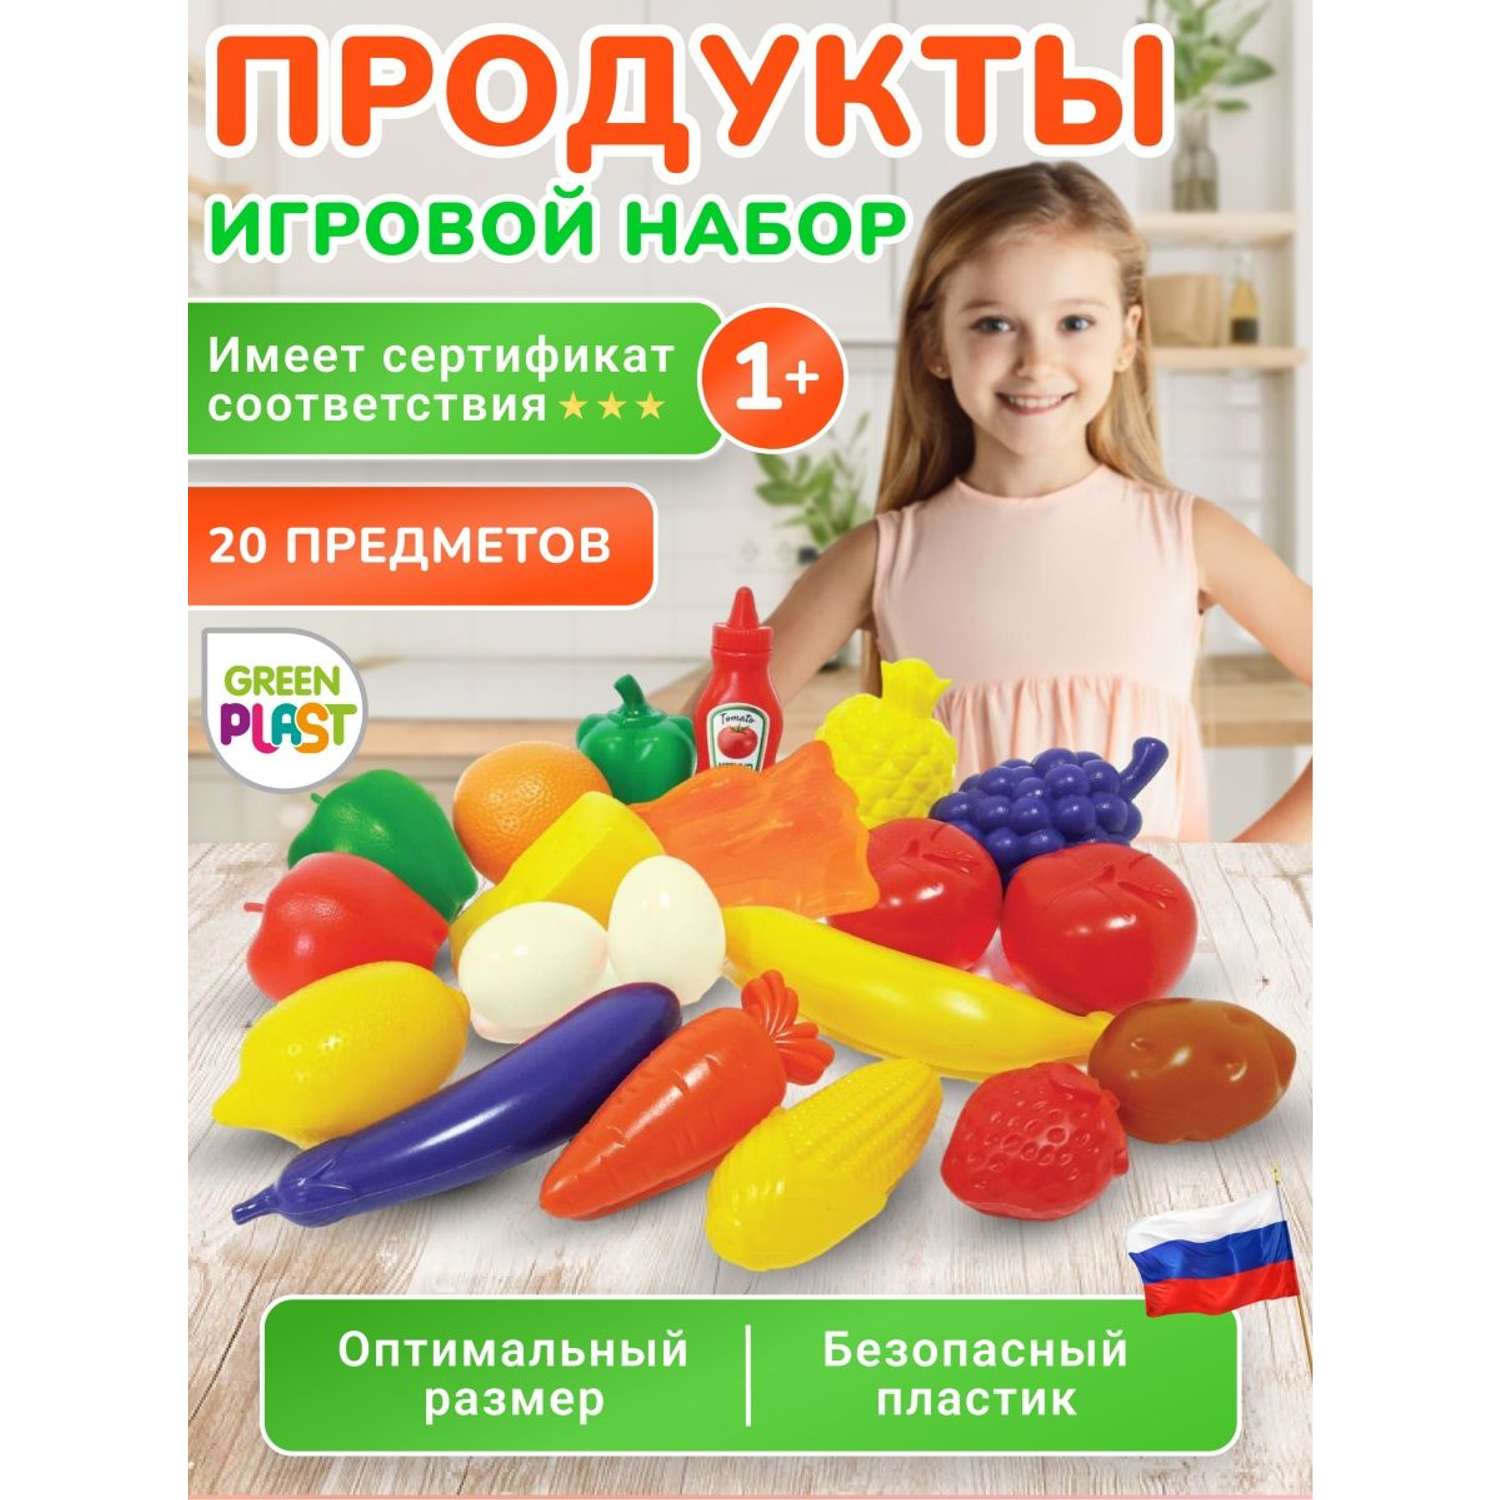 Игровой набор для кухни Green Plast игрушечные овощи фрукты продукты - фото 2